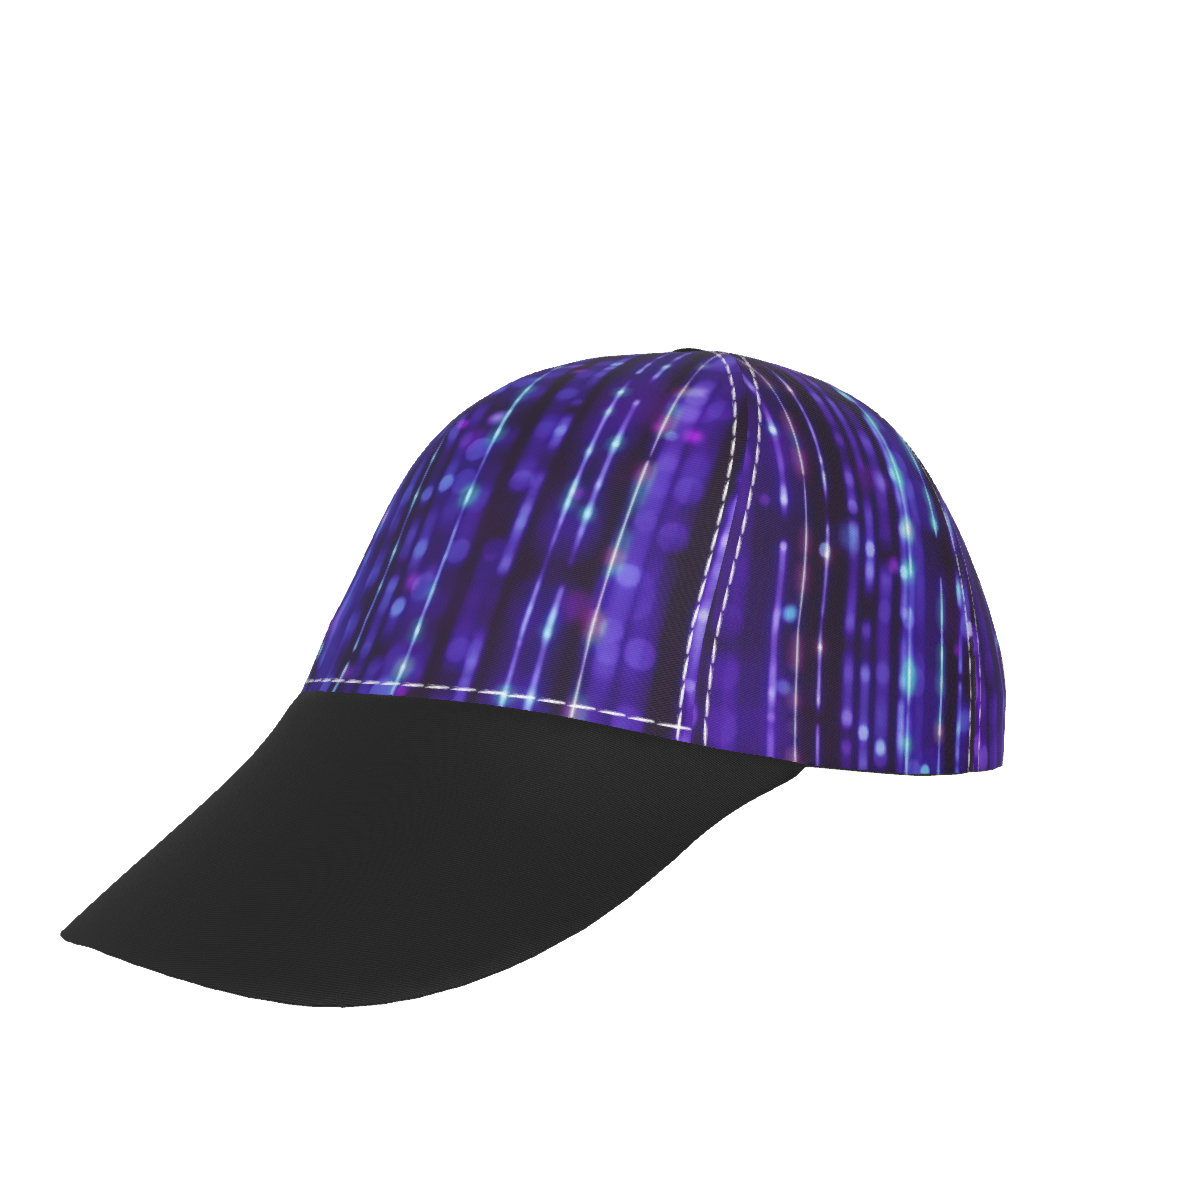 Purple Dude with Black Peaked Cap - DromedarShop.com Online Boutique